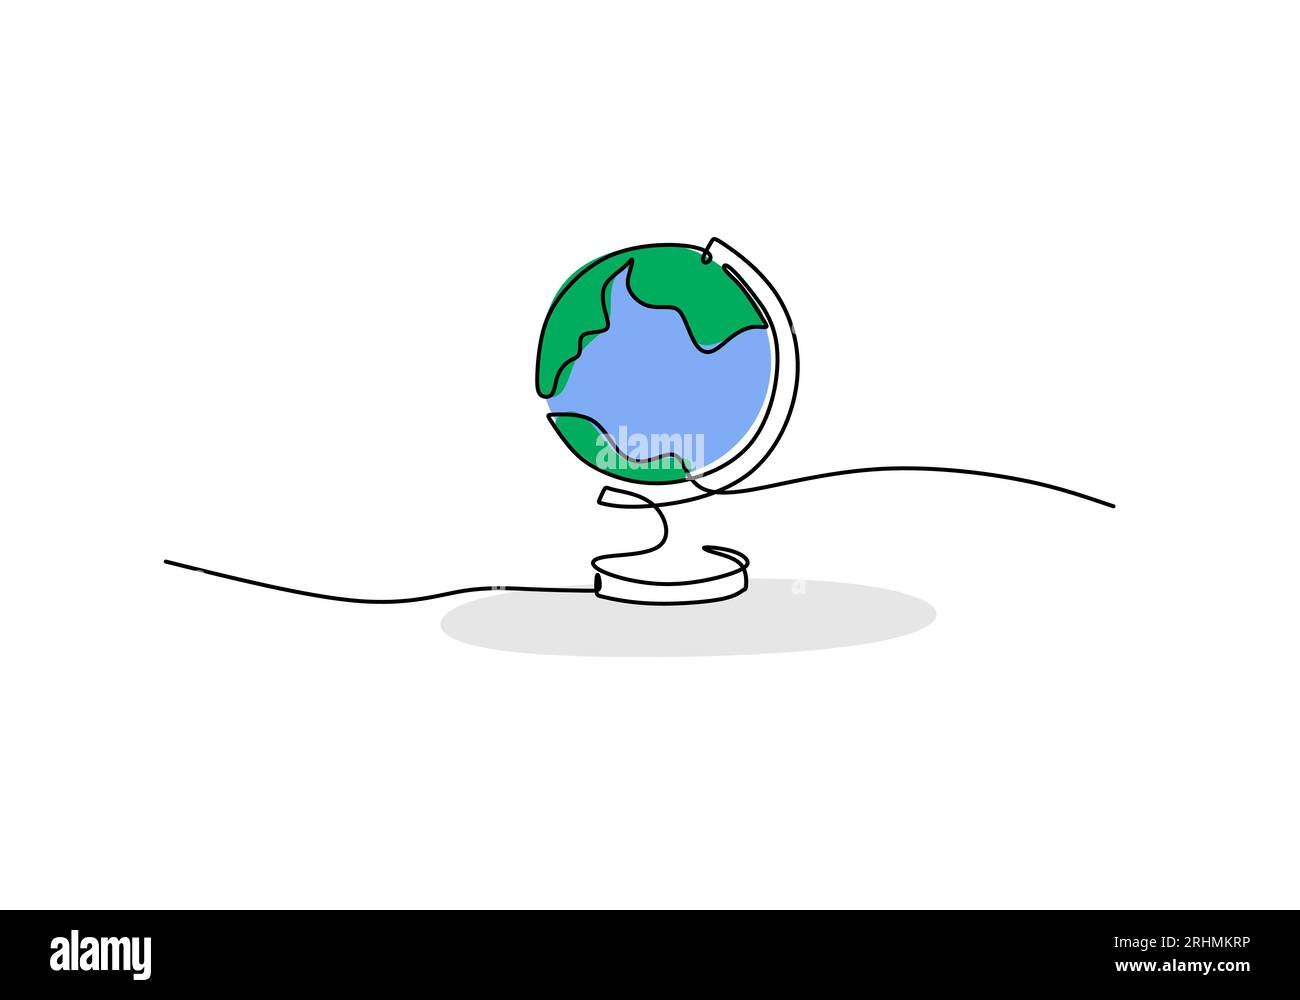 Earth globe design  Globe drawing, Earth globe, Cartoon globe